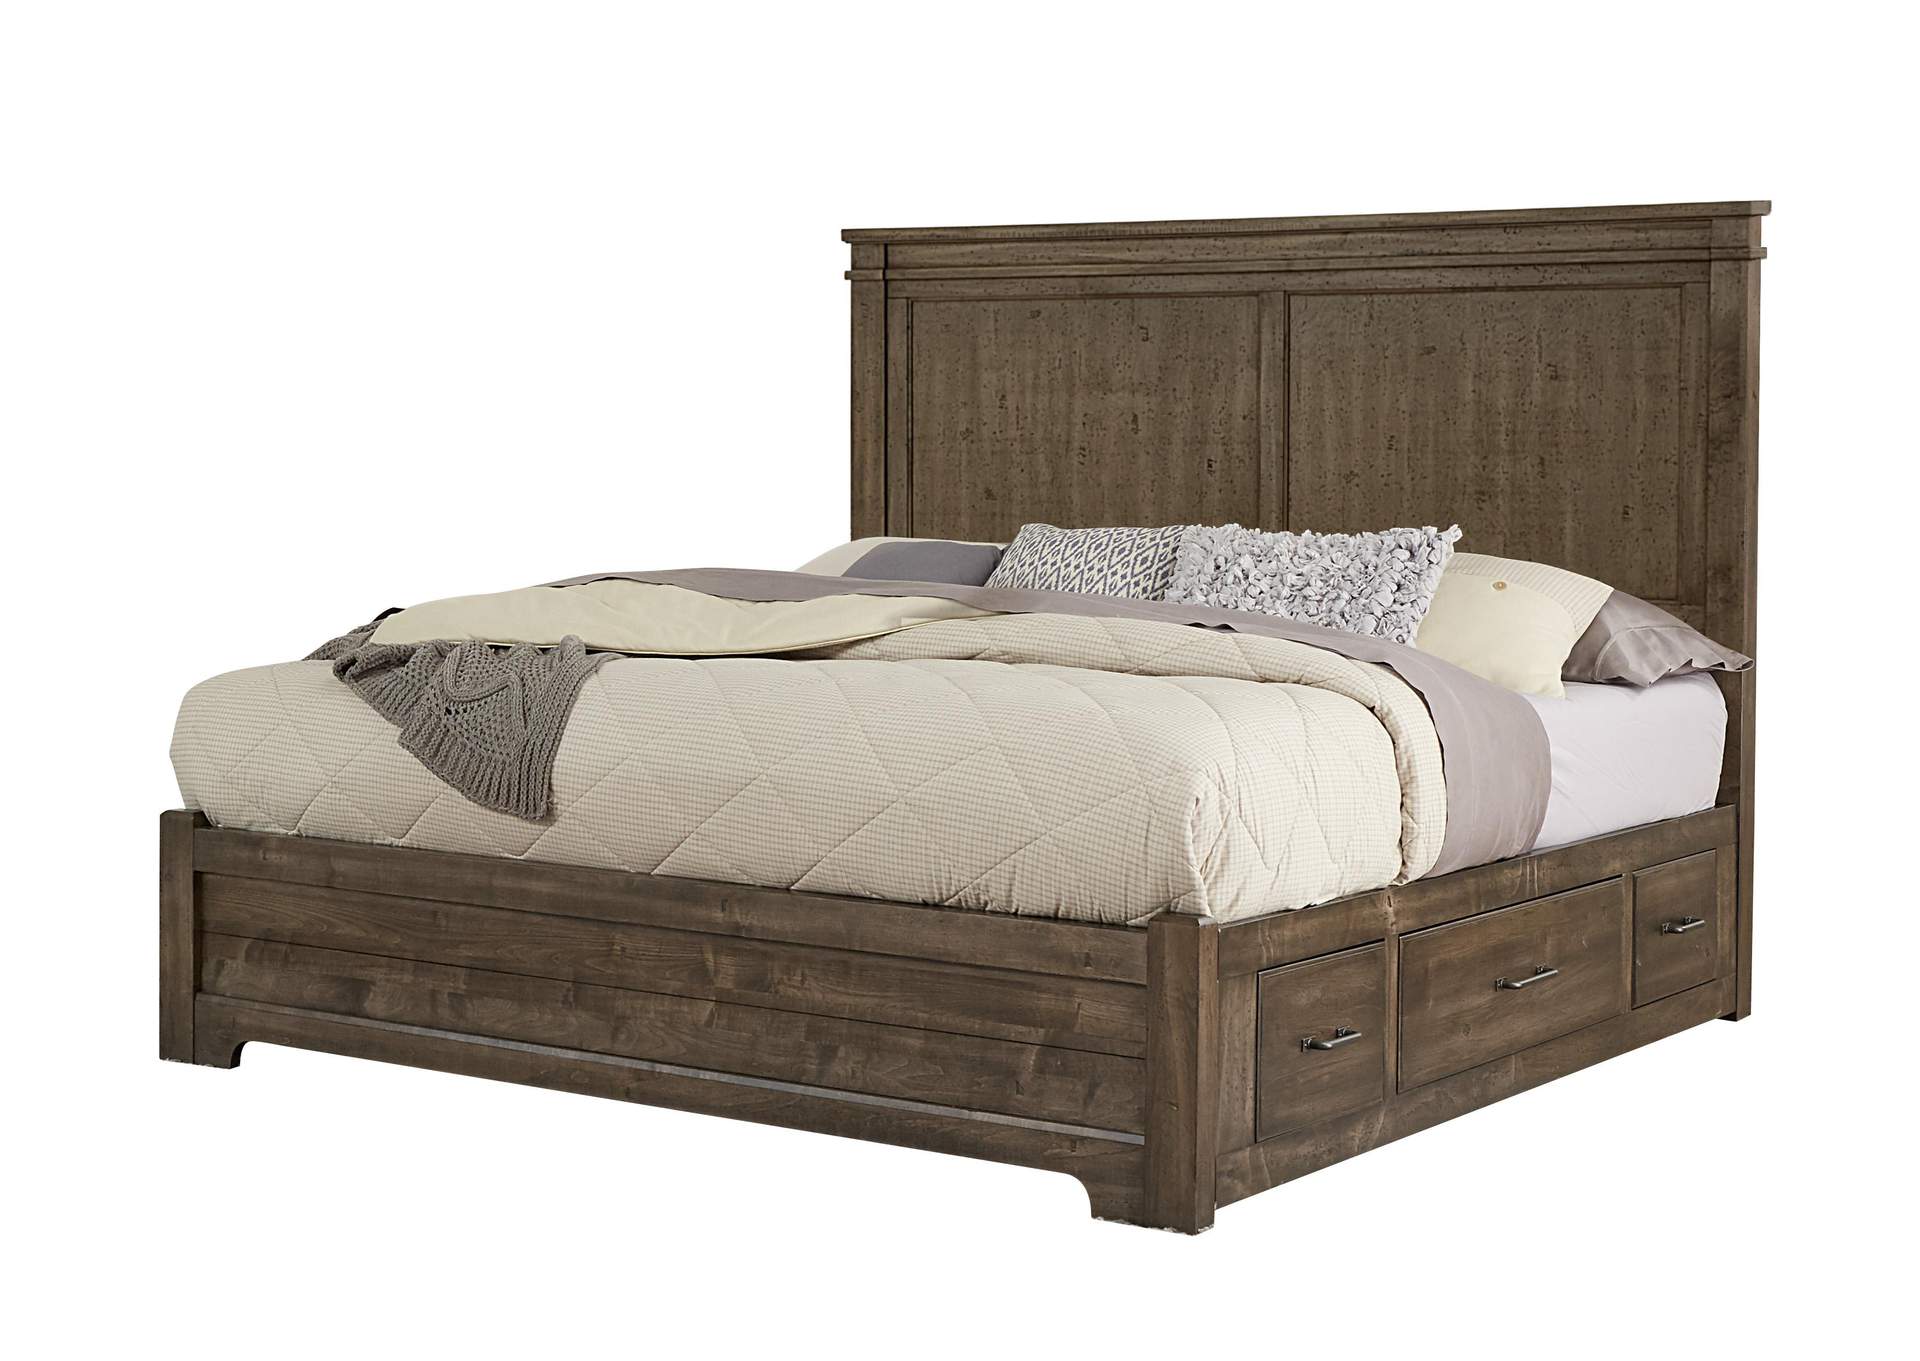 Queen Mansion Bed,Vaughan-Bassett